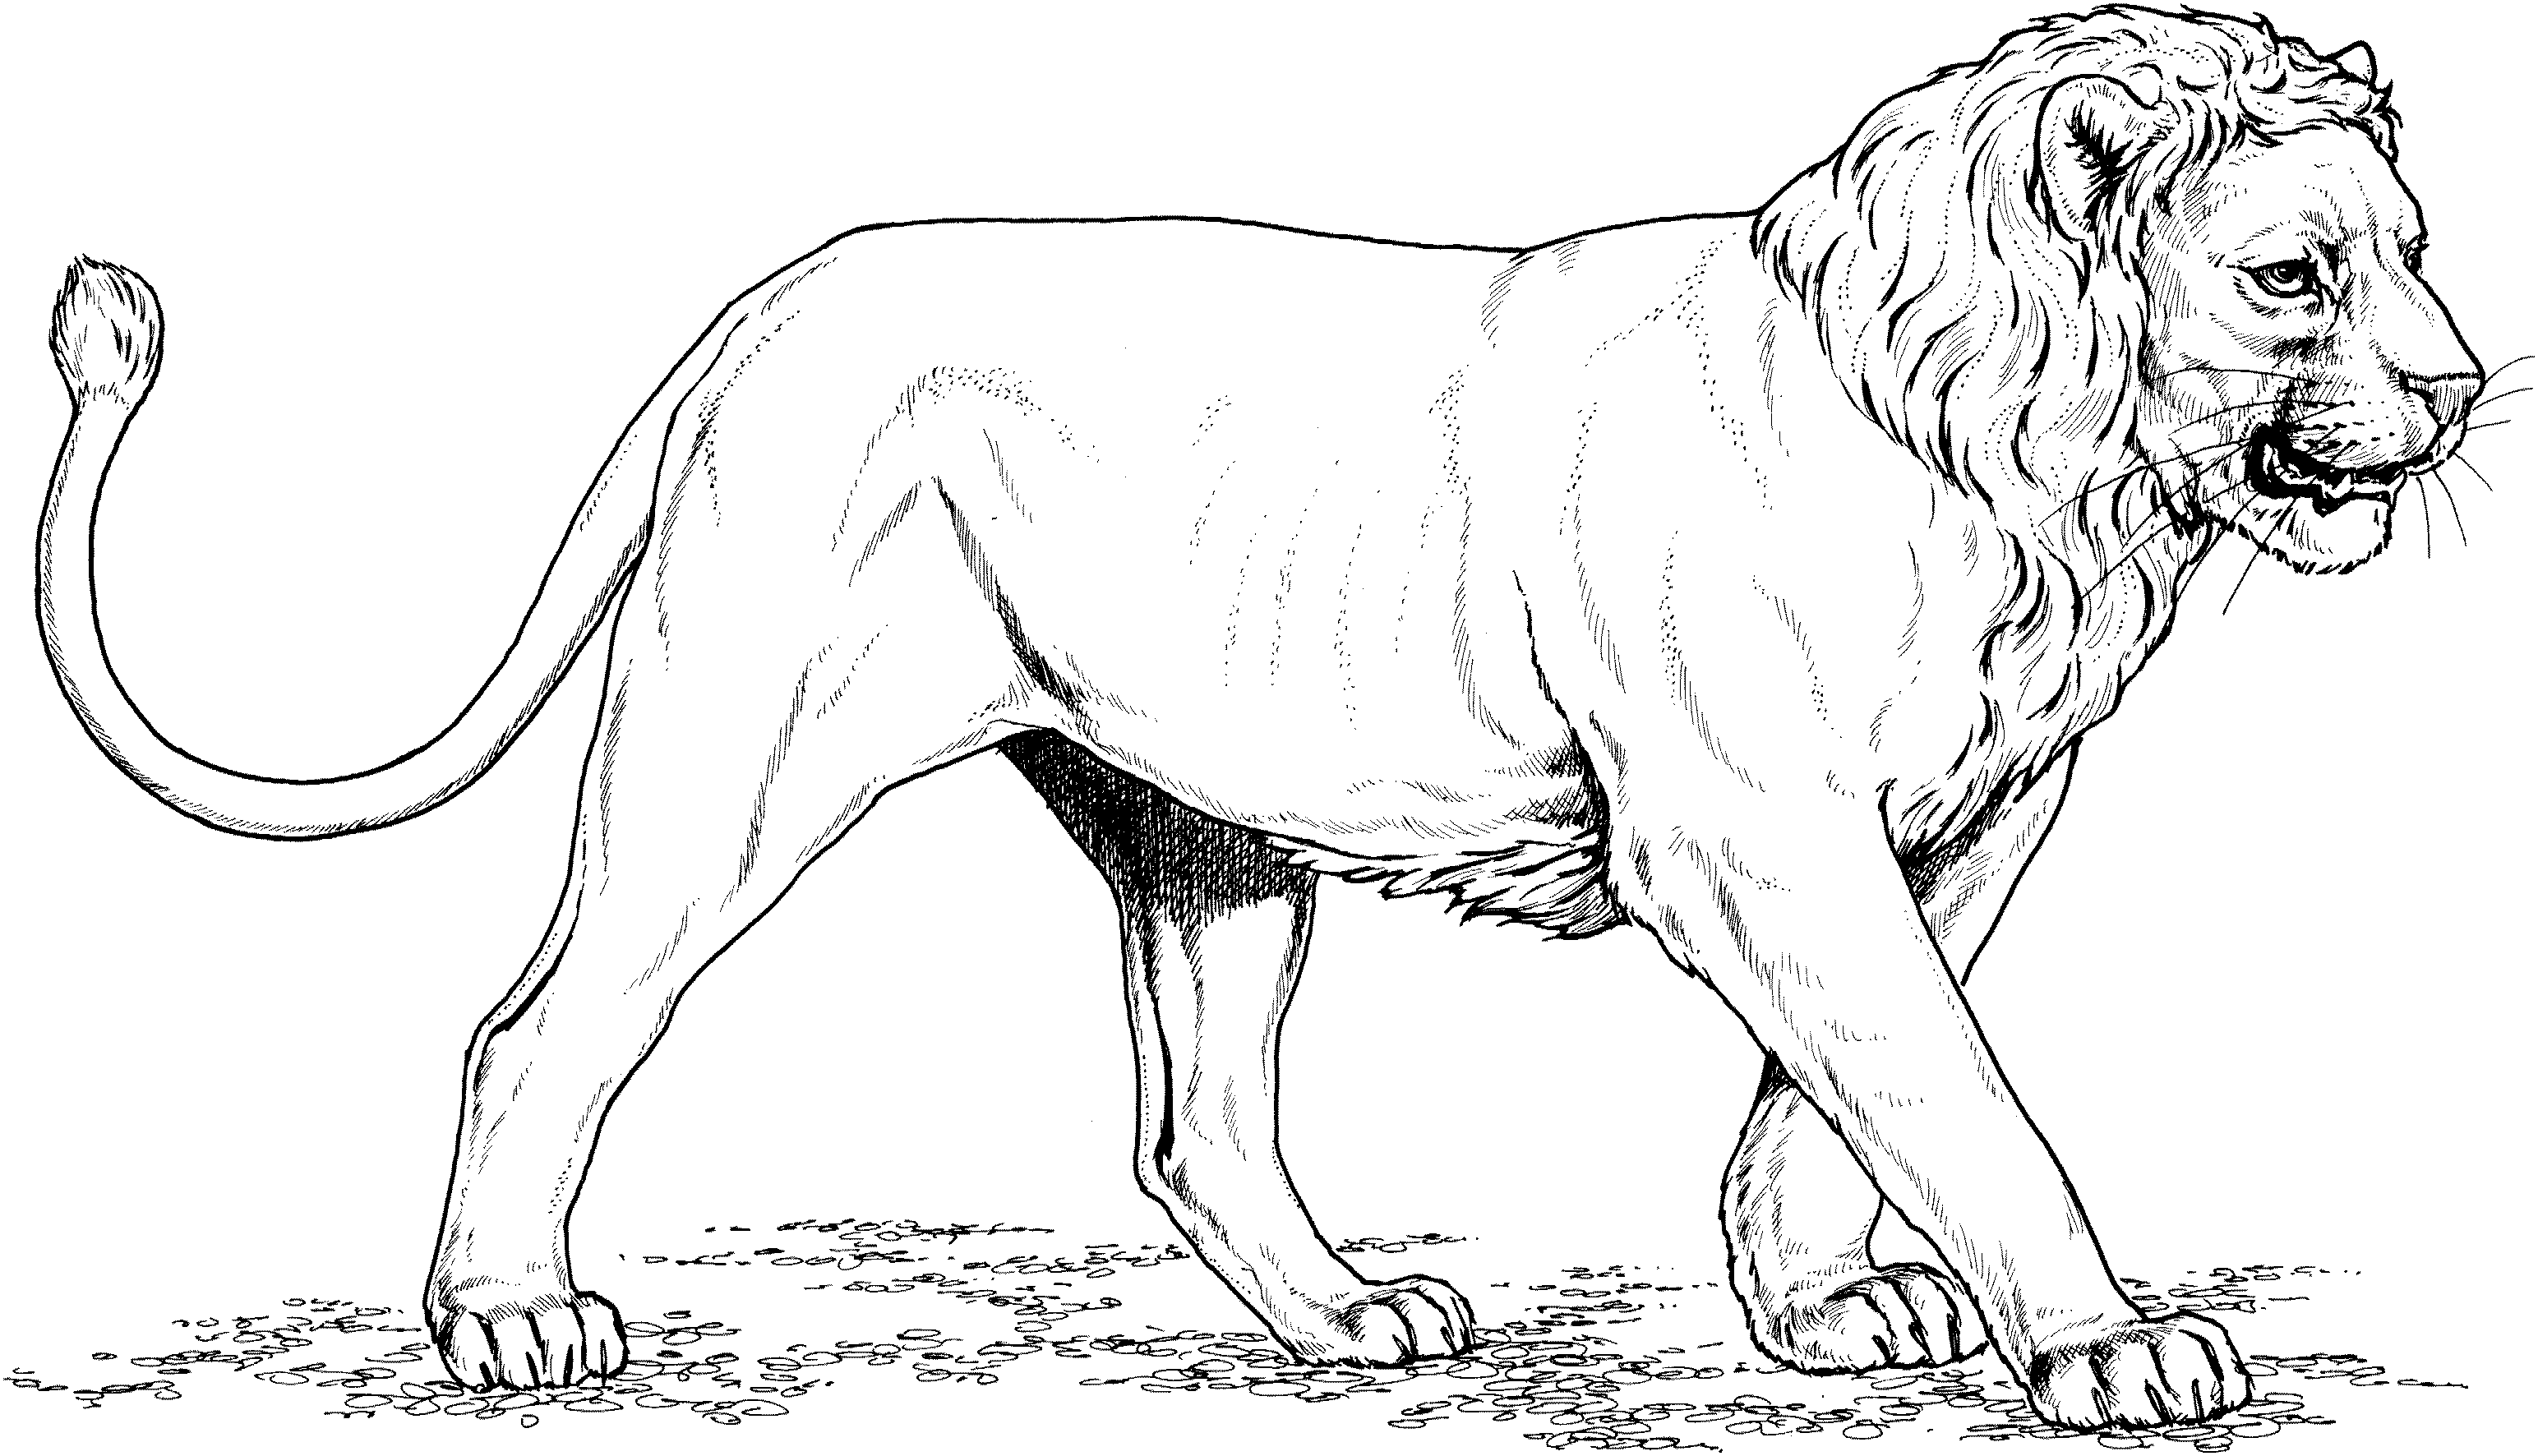 dibujos para colorear rey leon